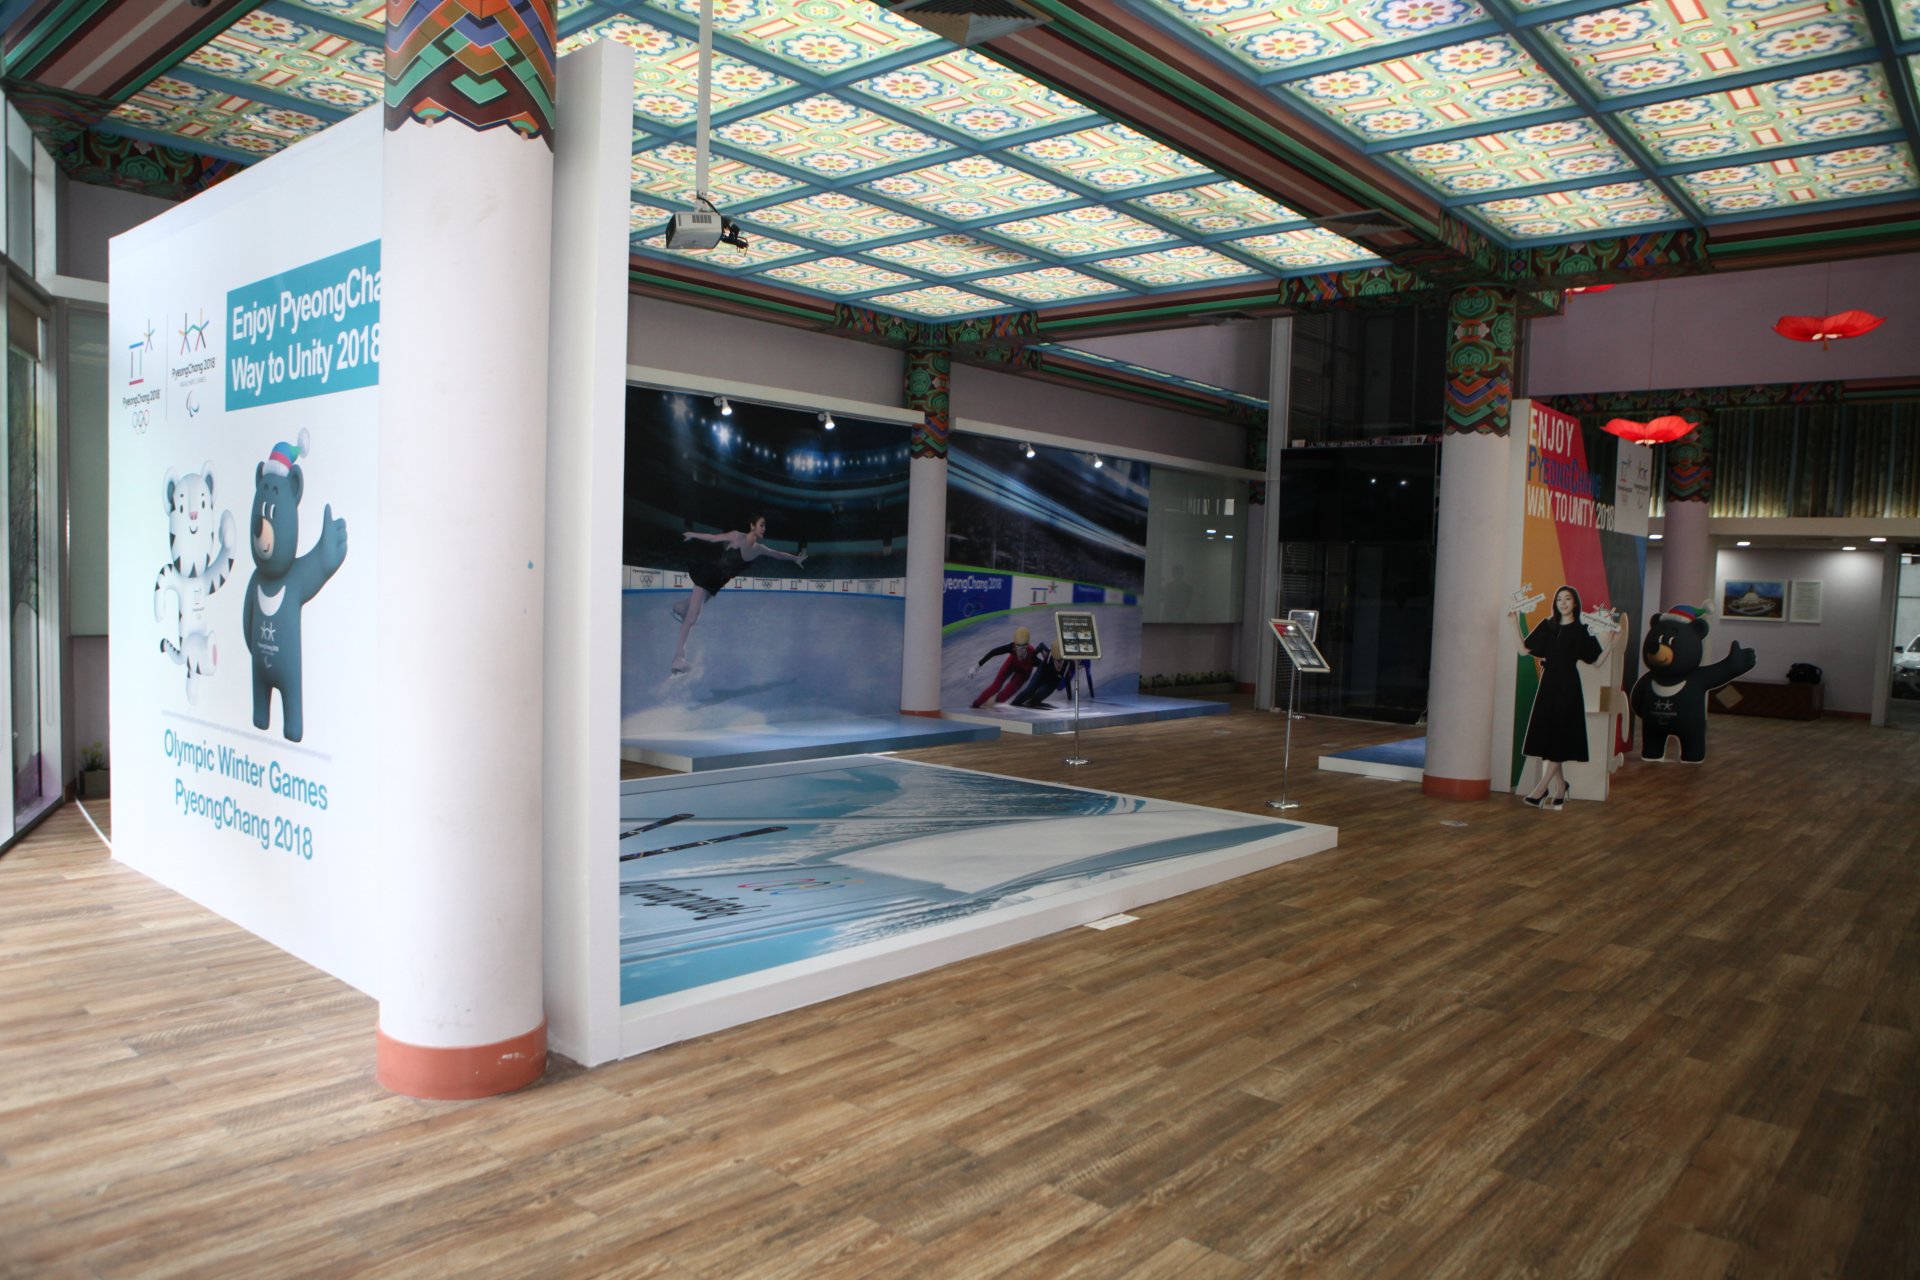 KCC (Korean Cultural Center) Pyeongchang Exhibition Project